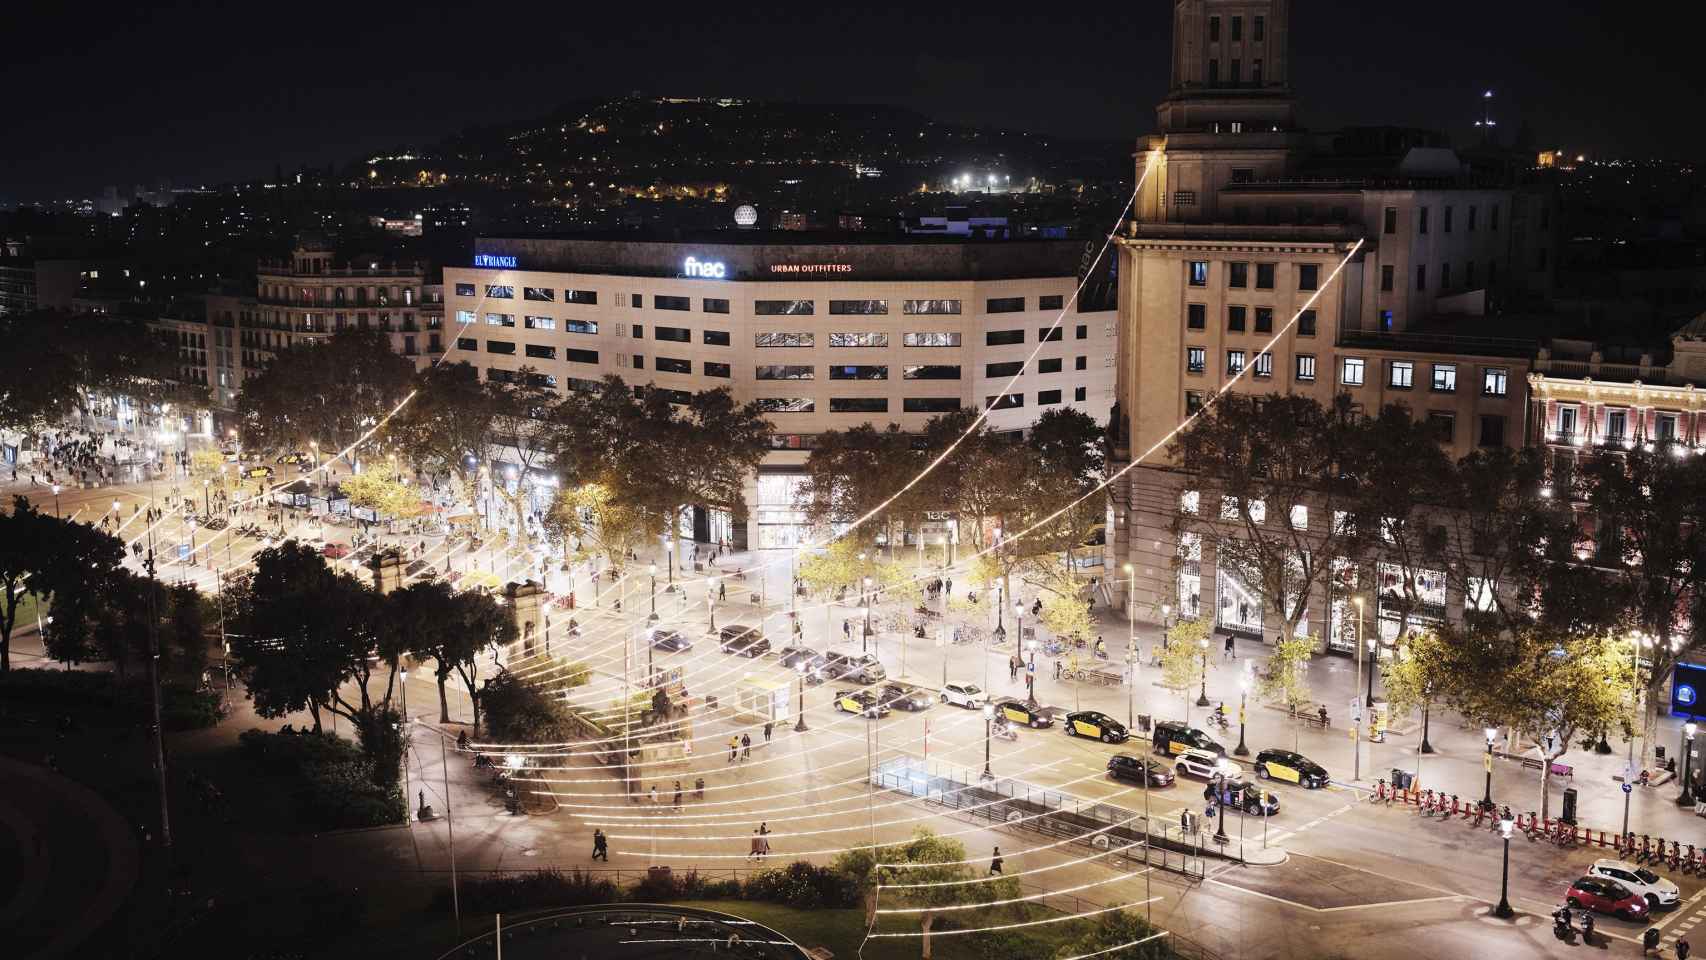 La plaza Catalunya iluminada con las luces de Navidad el año pasado / AYUNTAMIENTO DE BARCELONA